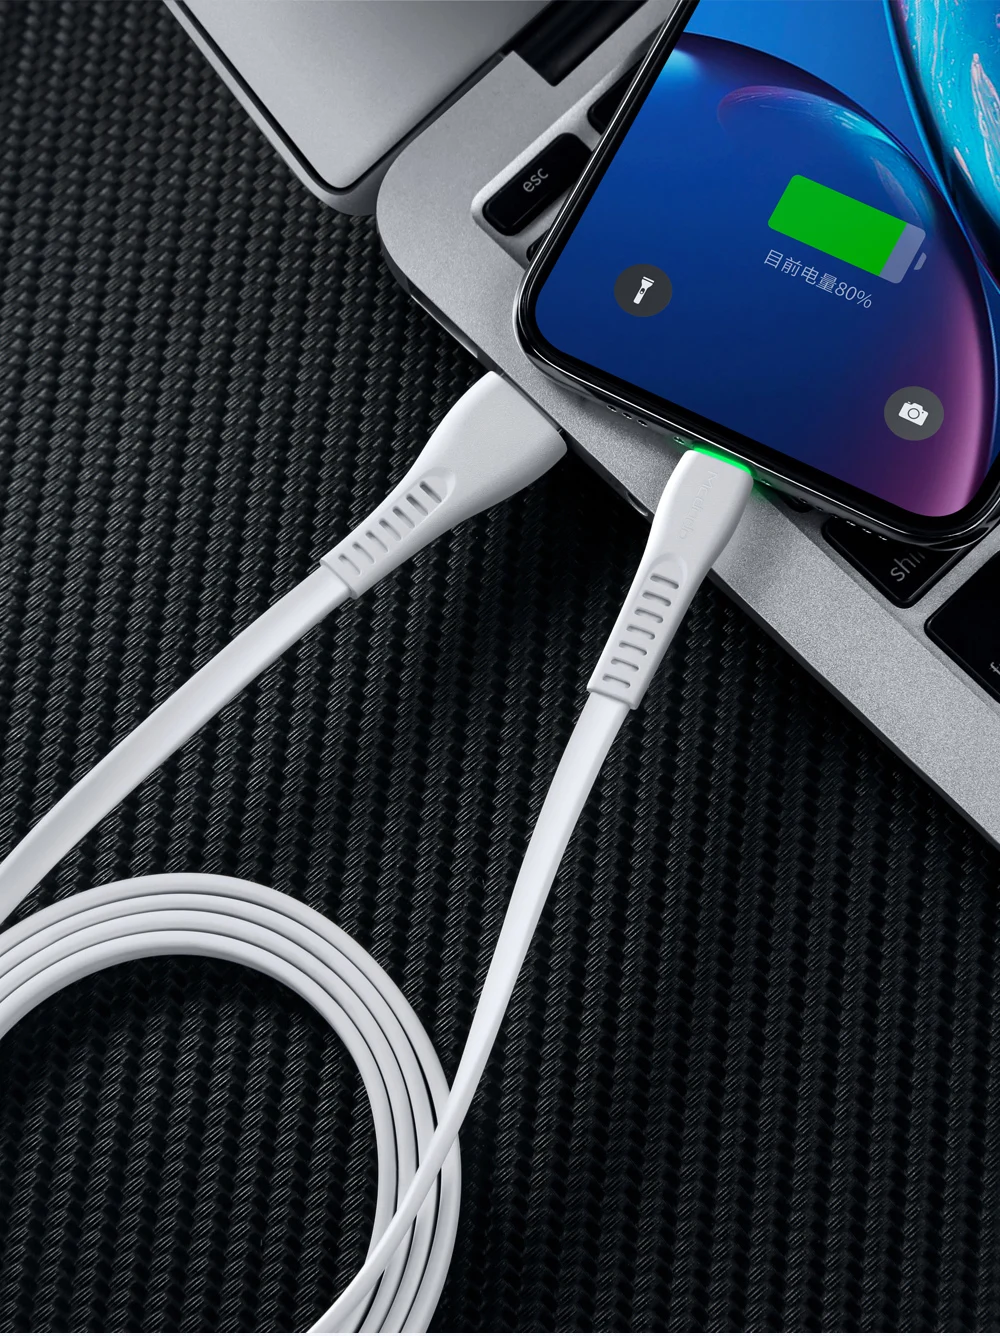 Mcdodo USB кабель для iPhone XS Max XR X 8 7 6s Plus iPad Mini IOS 12 USB кабель для телефона, зарядное устройство, шнур для передачи данных 2A, светодиодный кабель для быстрой зарядки